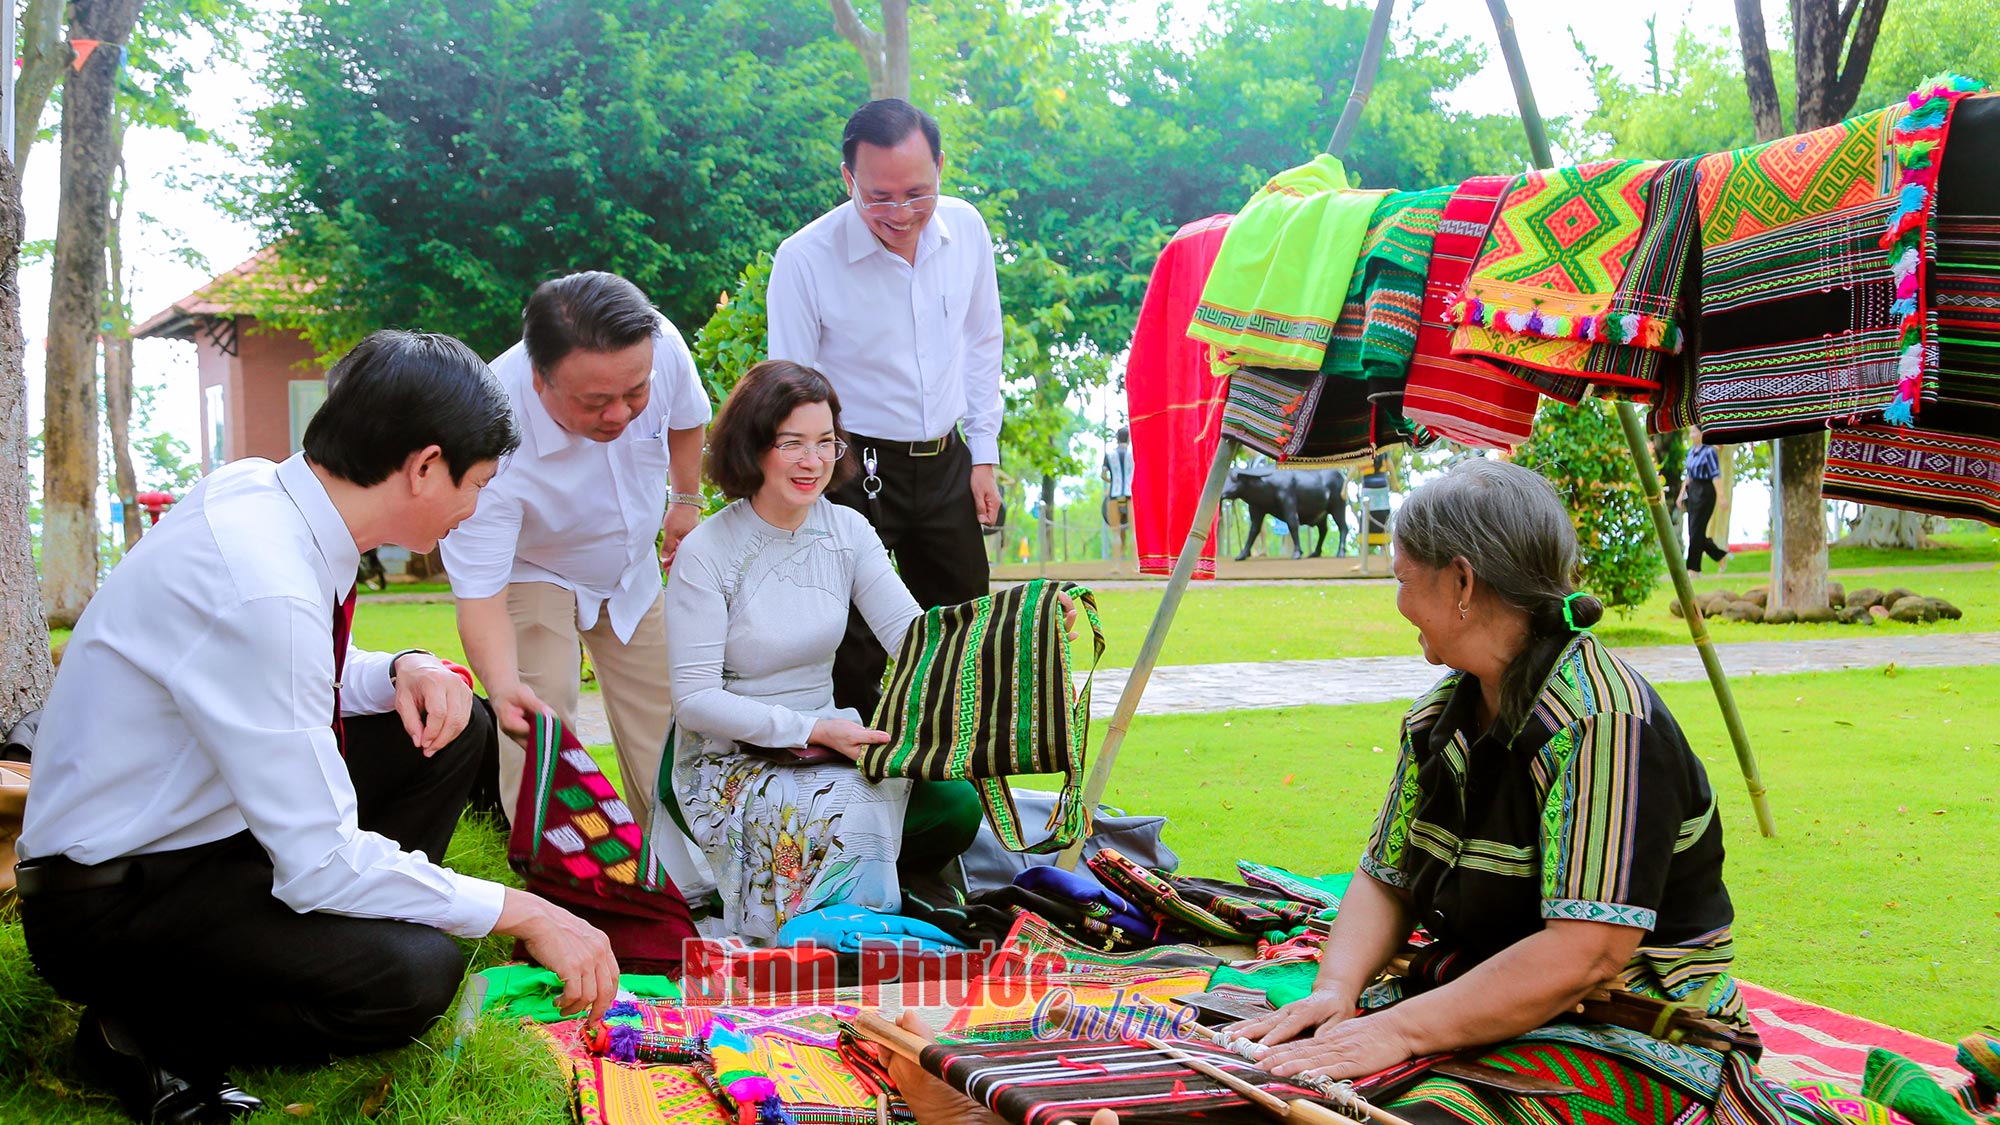 Lãnh đạo tỉnh và huyện Bù Đăng tham quan sản phẩm thổ cẩm của đồng bào M'nông ở Bình Phước - Ảnh: TRƯƠNG HIỆN